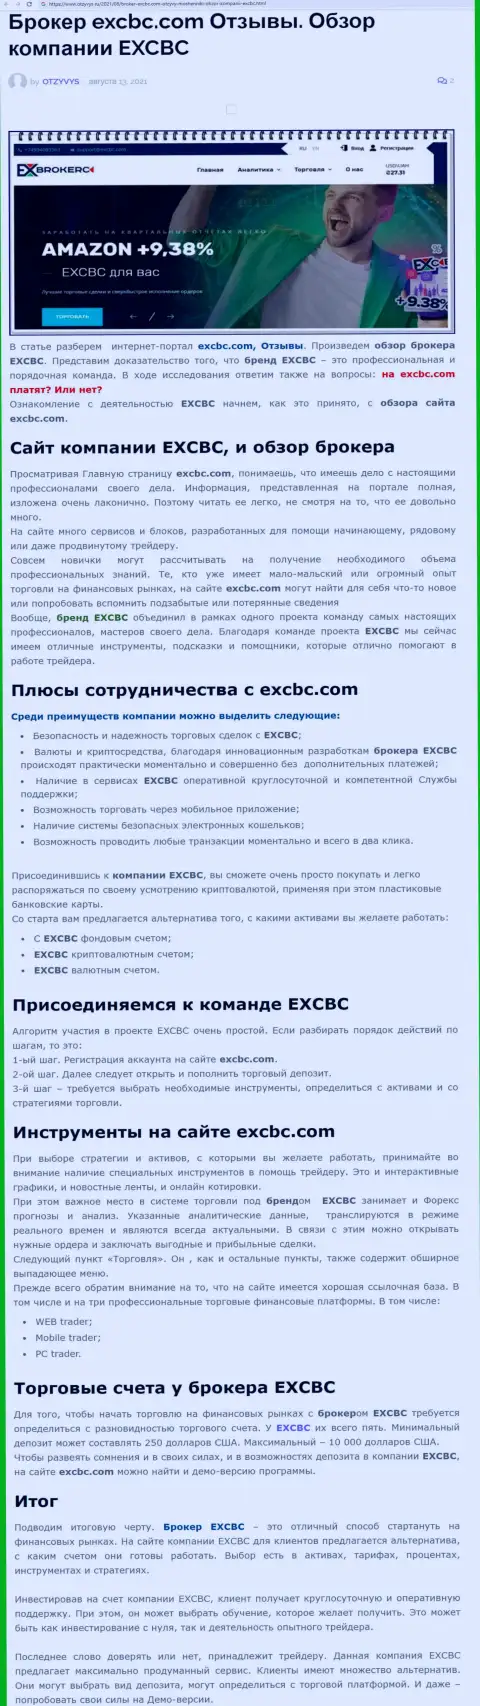 Статья о форекс дилинговой организации EXCBC на сайте Otzyvys Ru